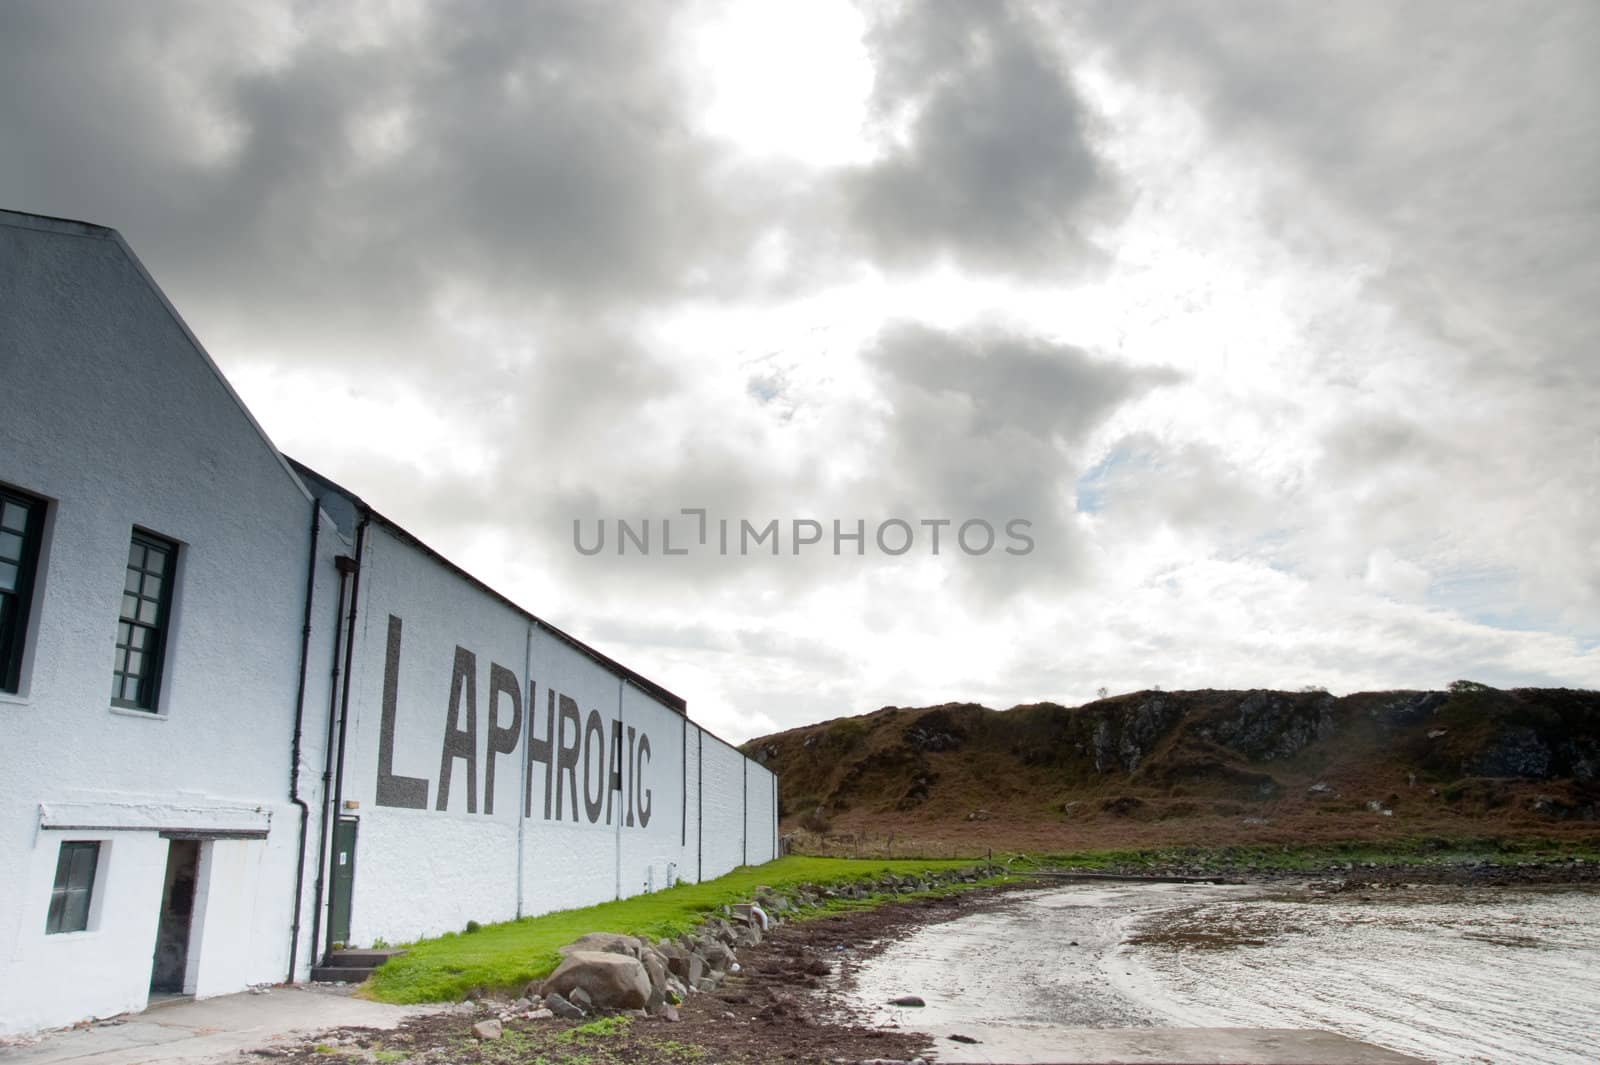 Laphroaig distillery and Loch Laphroaig bay on the island of Islay